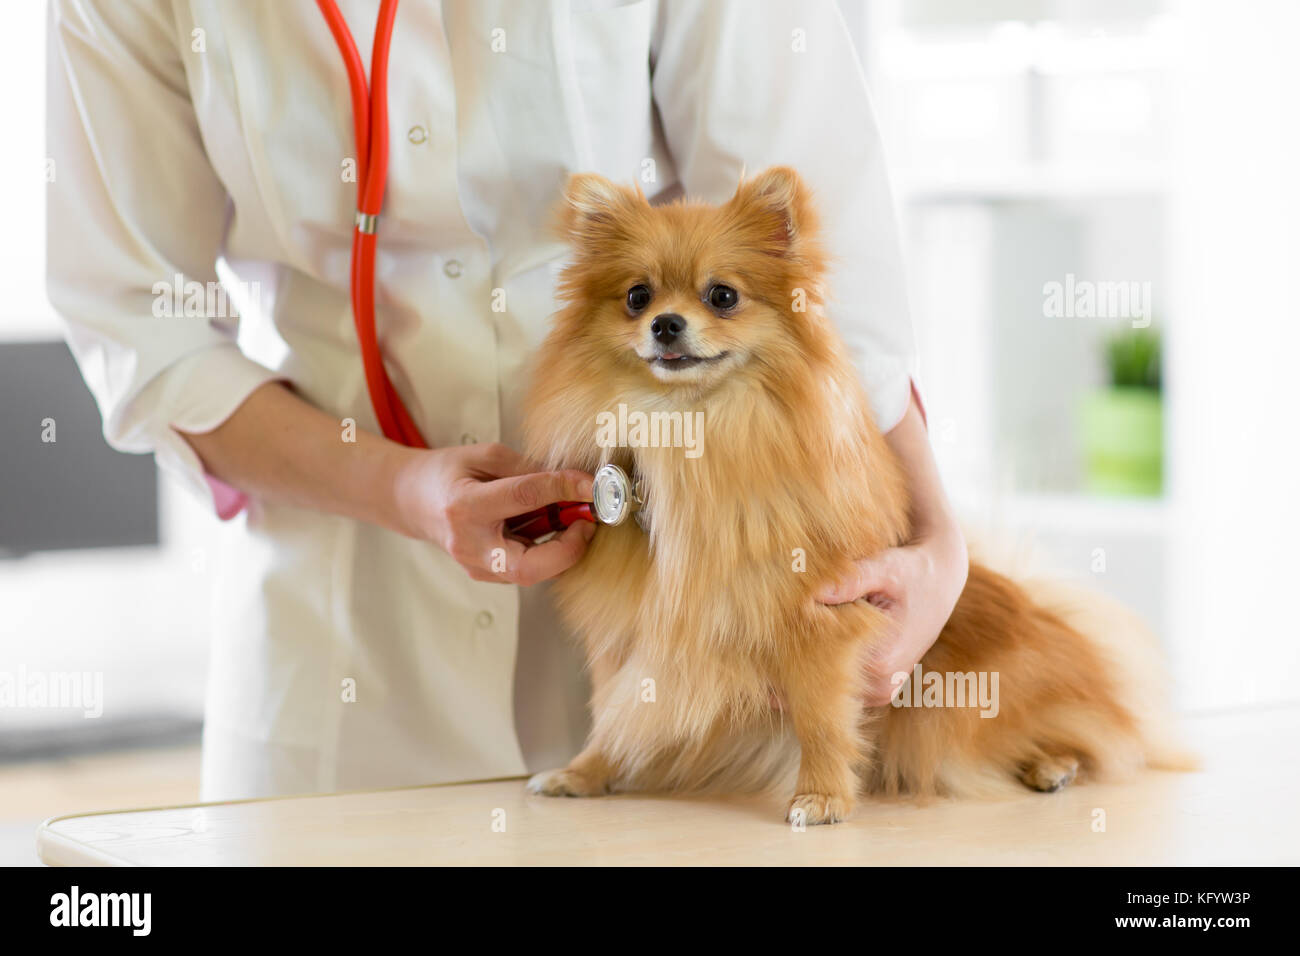 Médecin vétérinaire à l'aide lors de l'examen de stéthoscope clinique vétérinaire. chien spitz pomeranian dans une clinique vétérinaire Banque D'Images